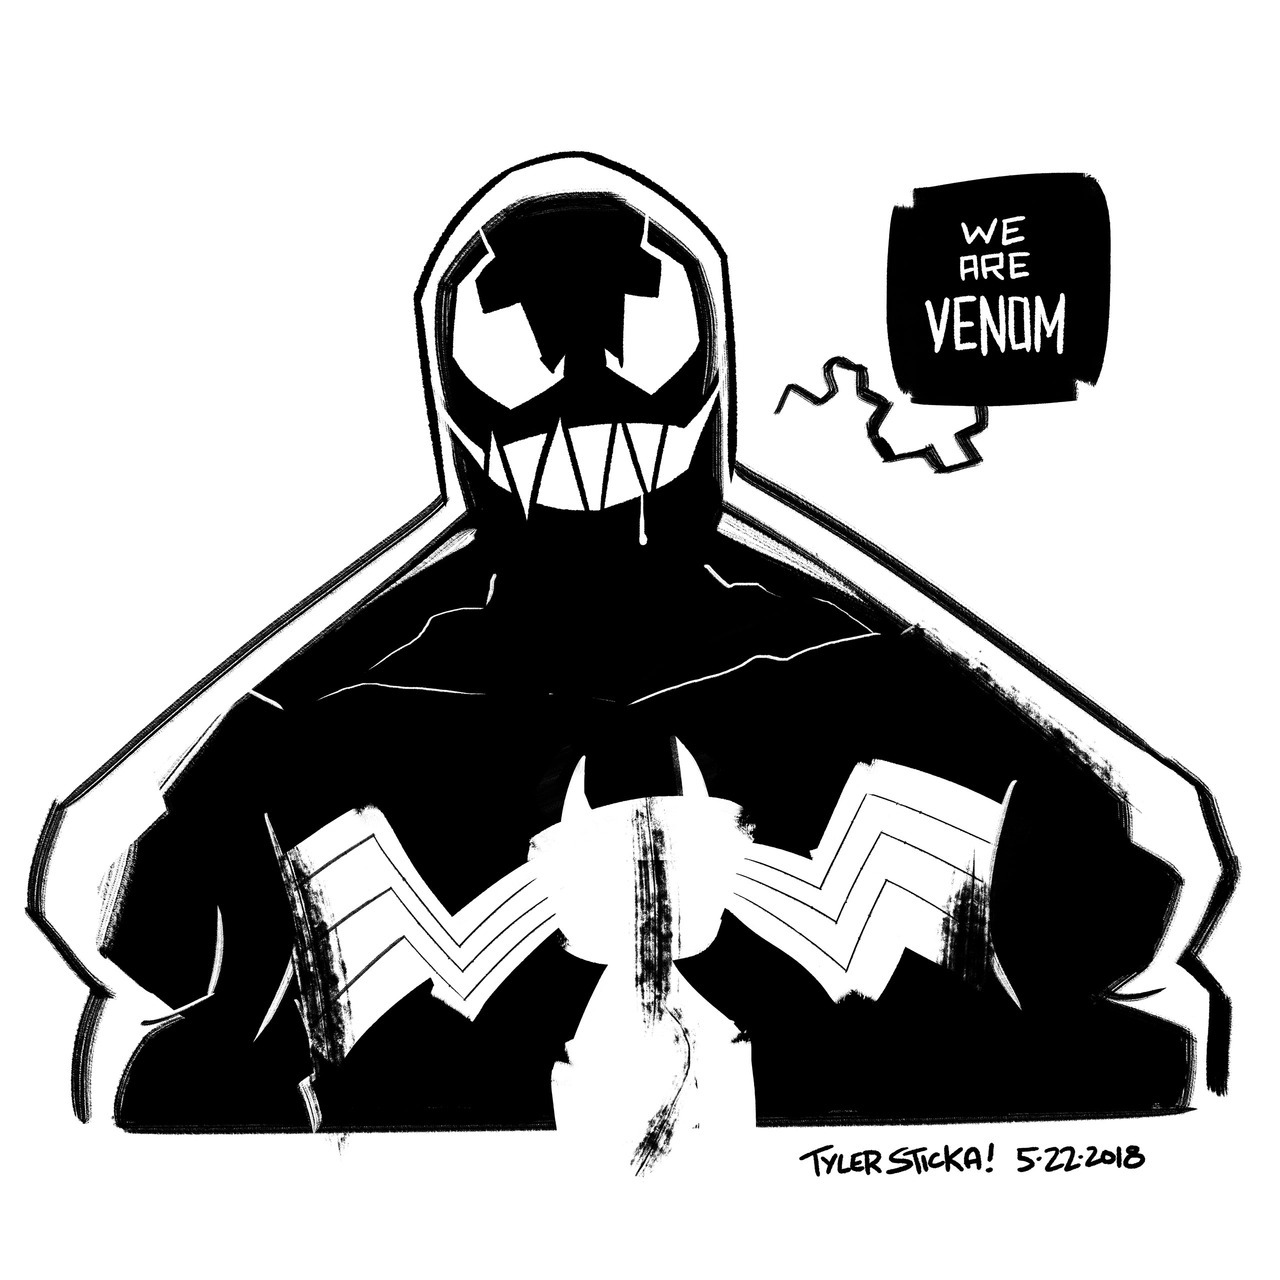 "We are Venom"